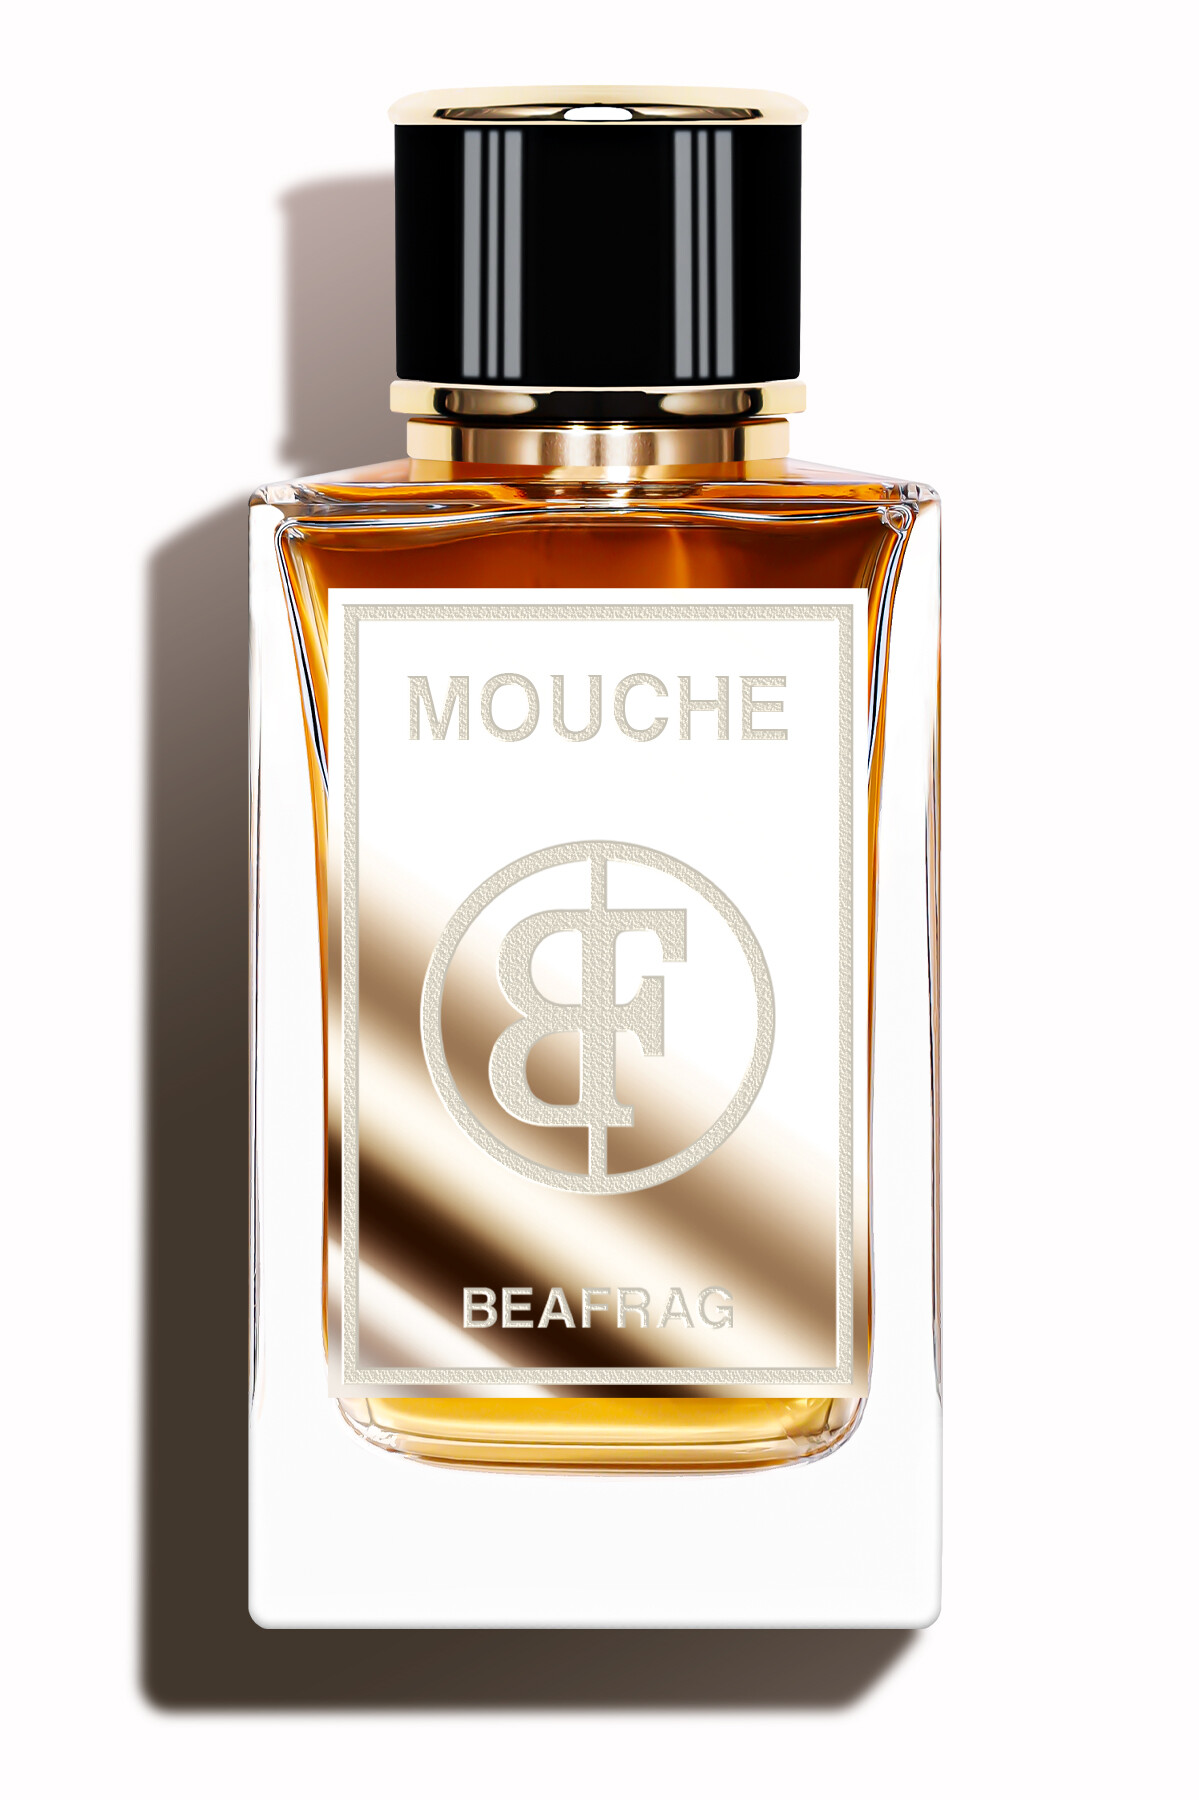 Mouche - 150 ml - Eau De Parfum - Beafrag